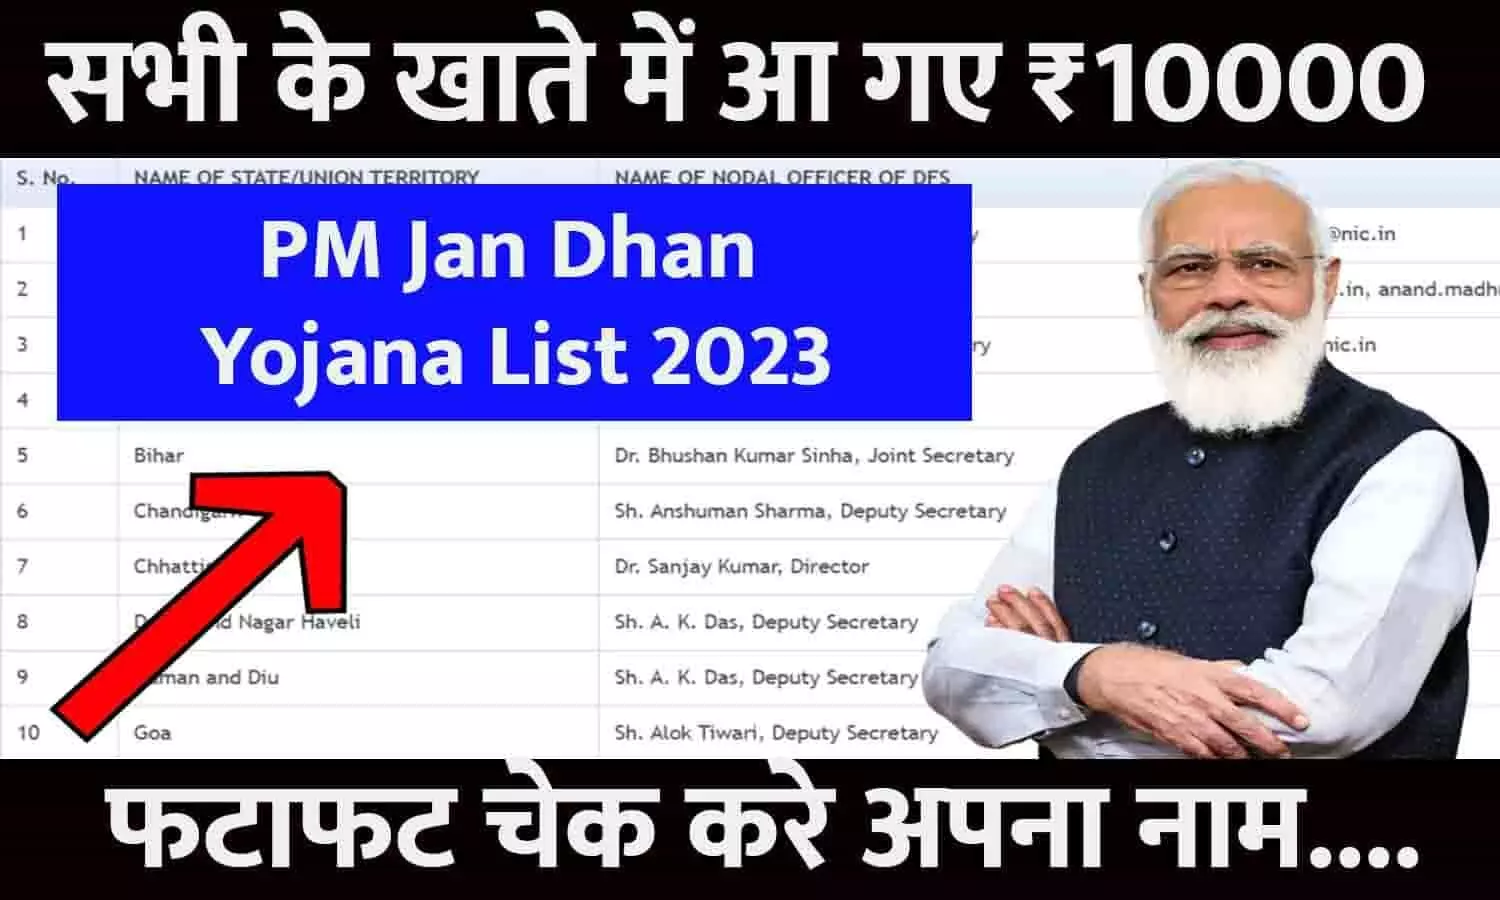 PM Jan Dhan Yojana List 2023